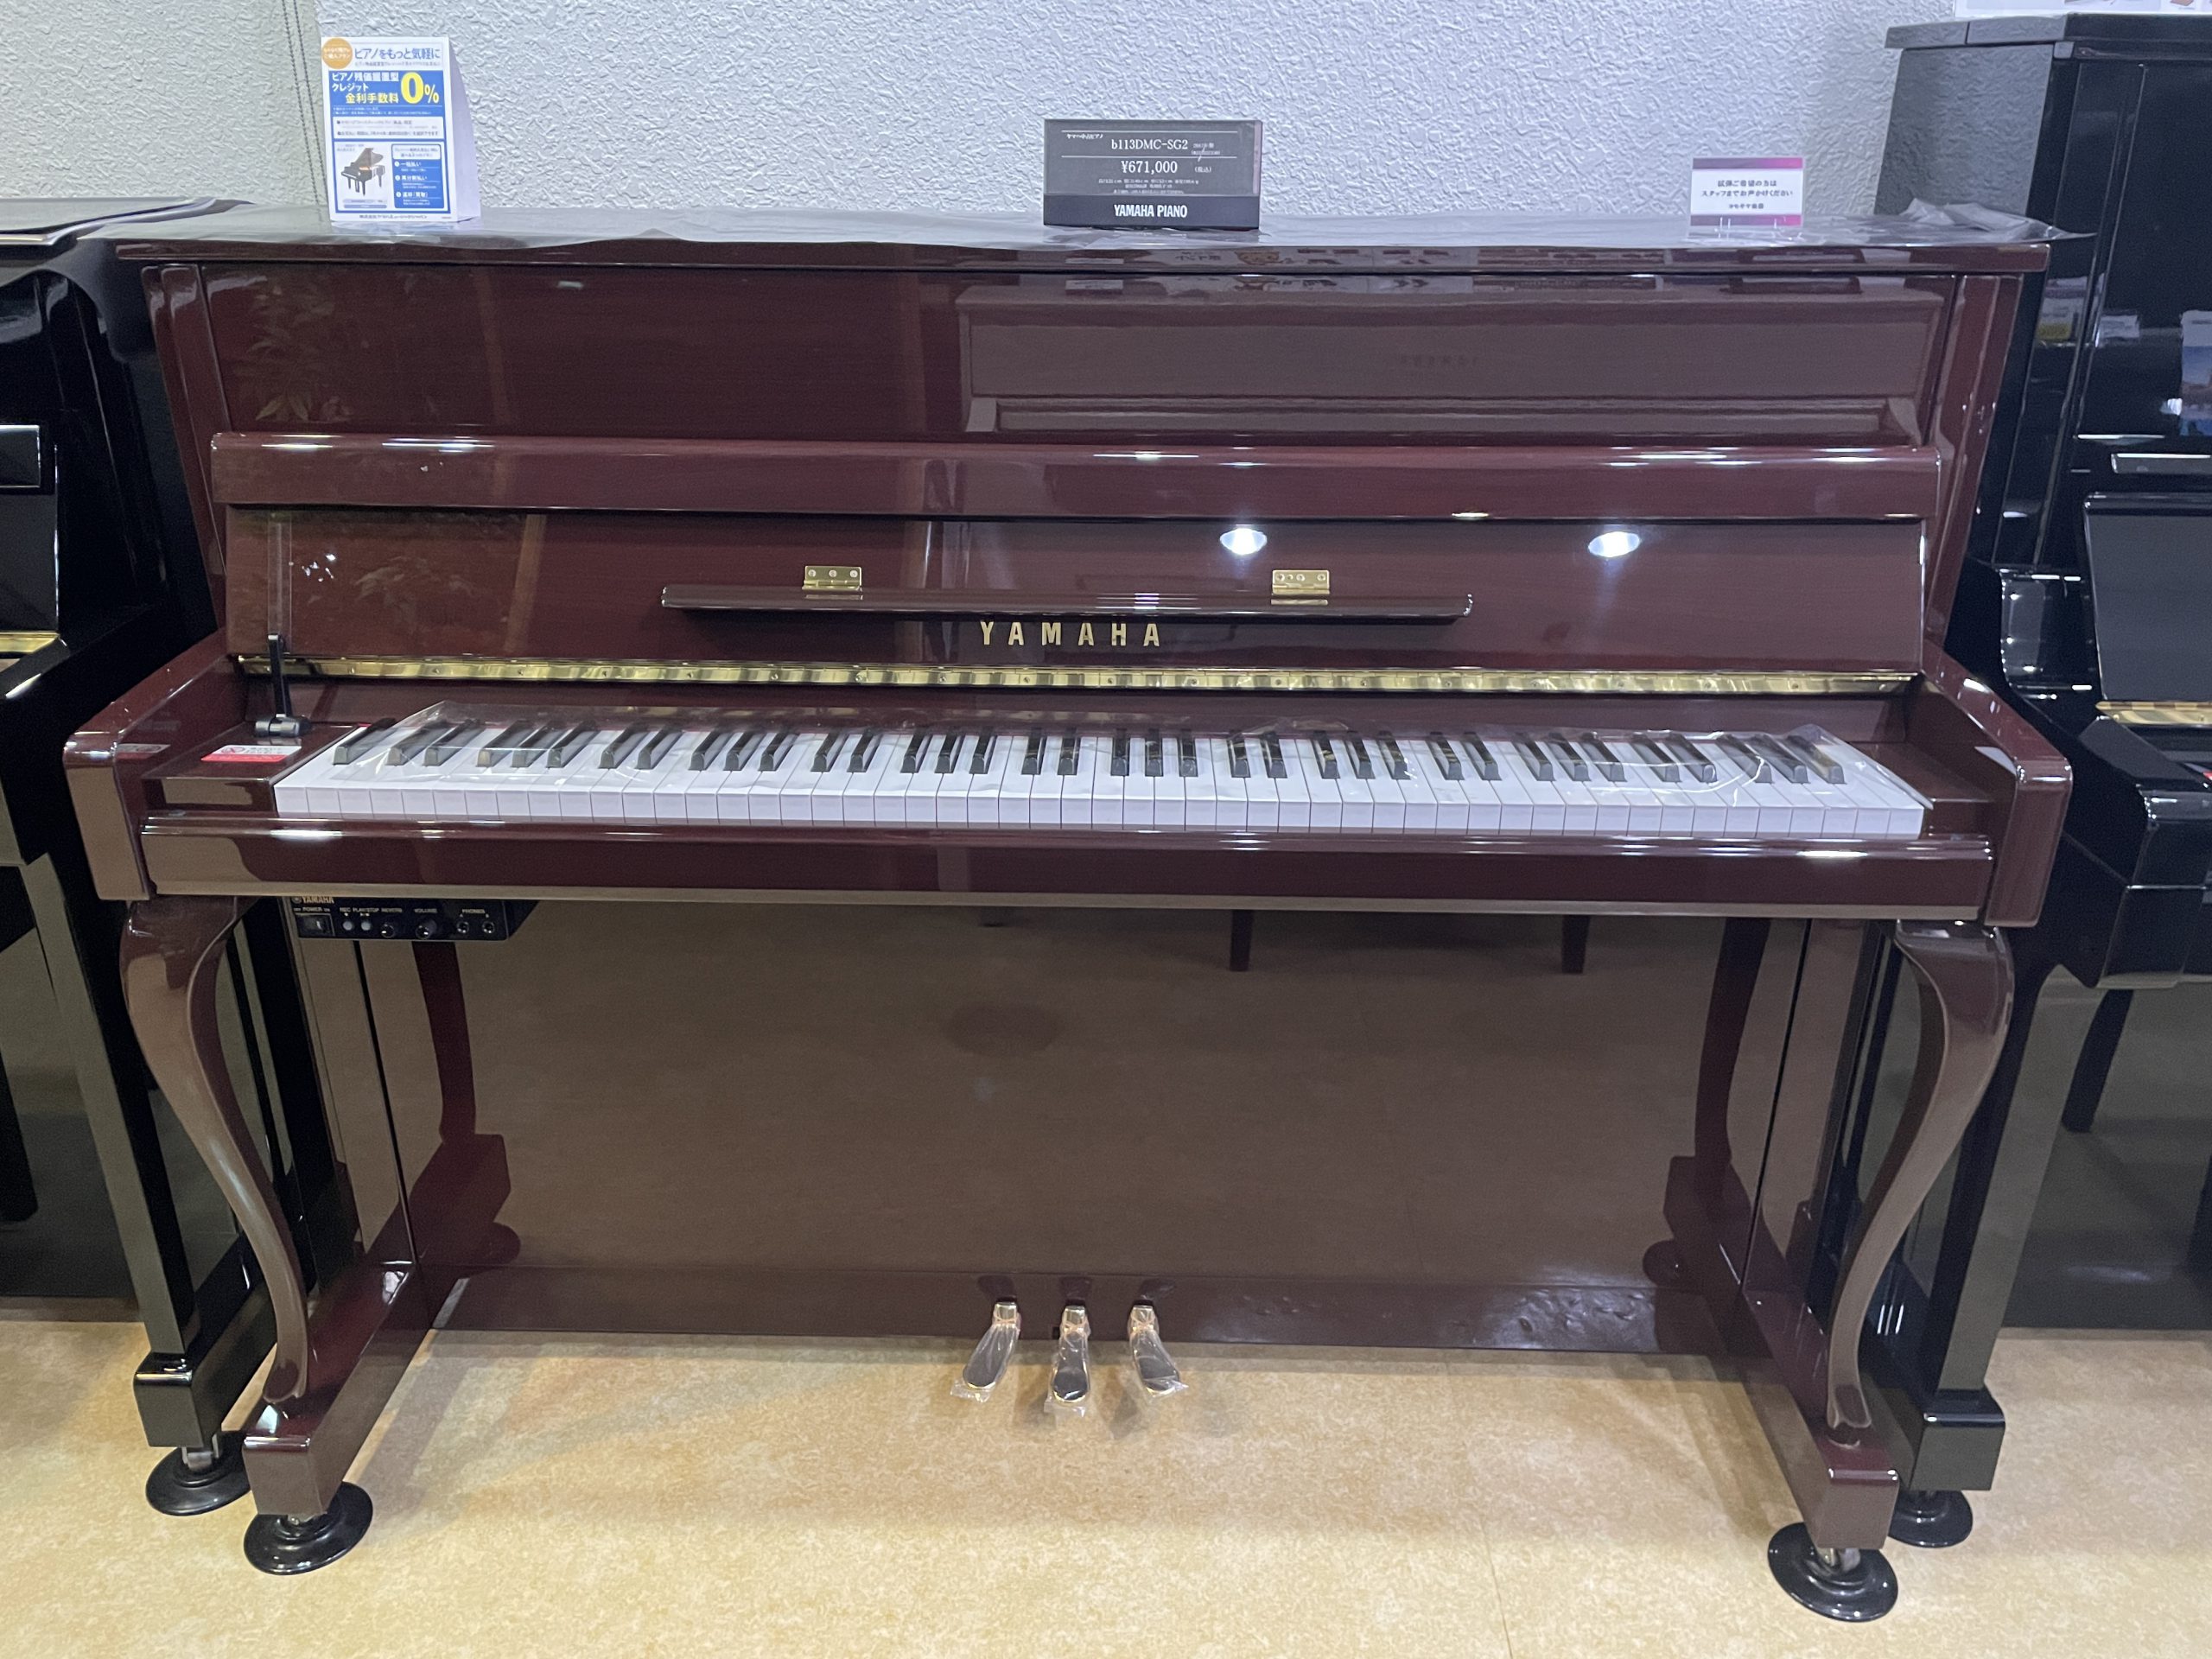 ヤマハリニューアルピアノ YU3 1997年製 中古ピアノ - 鍵盤楽器、ピアノ